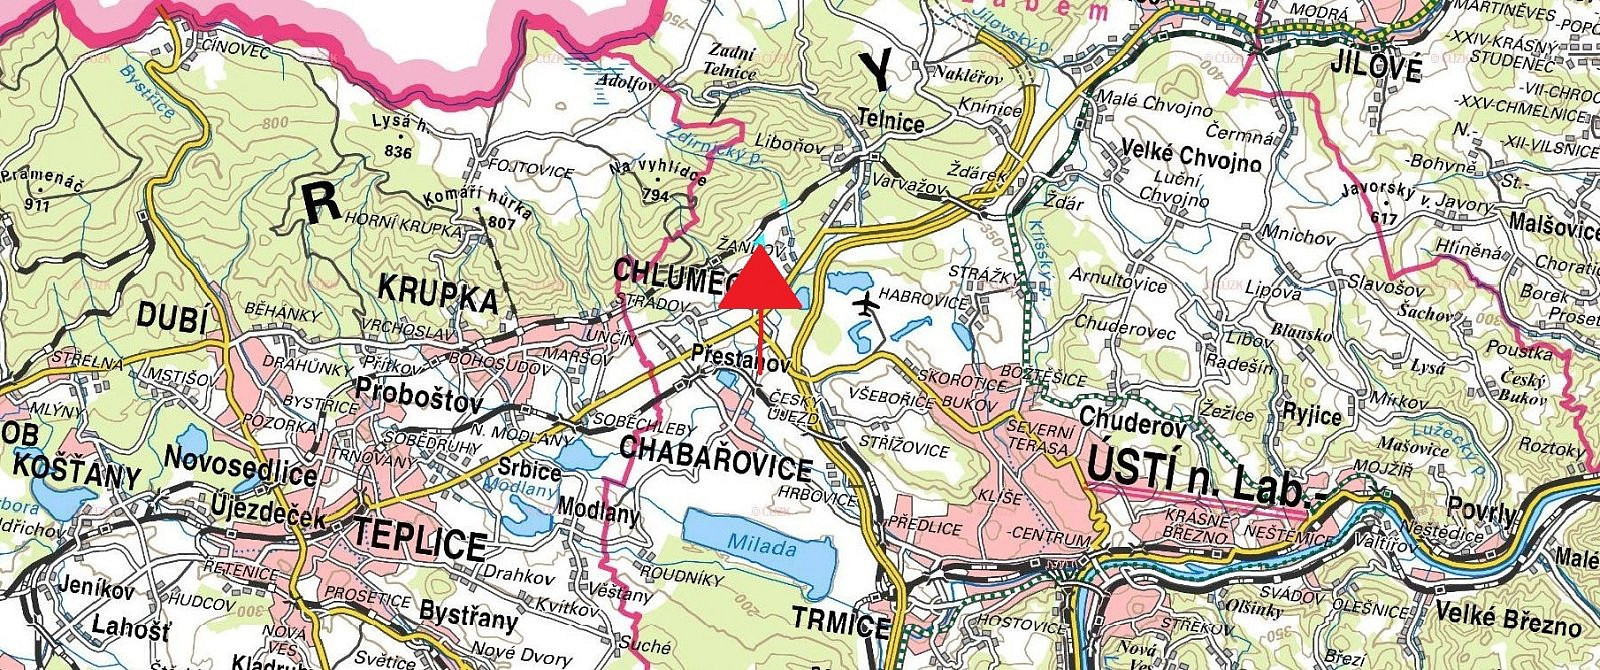 Chlumec - Žandov, okres Ústí nad Labem